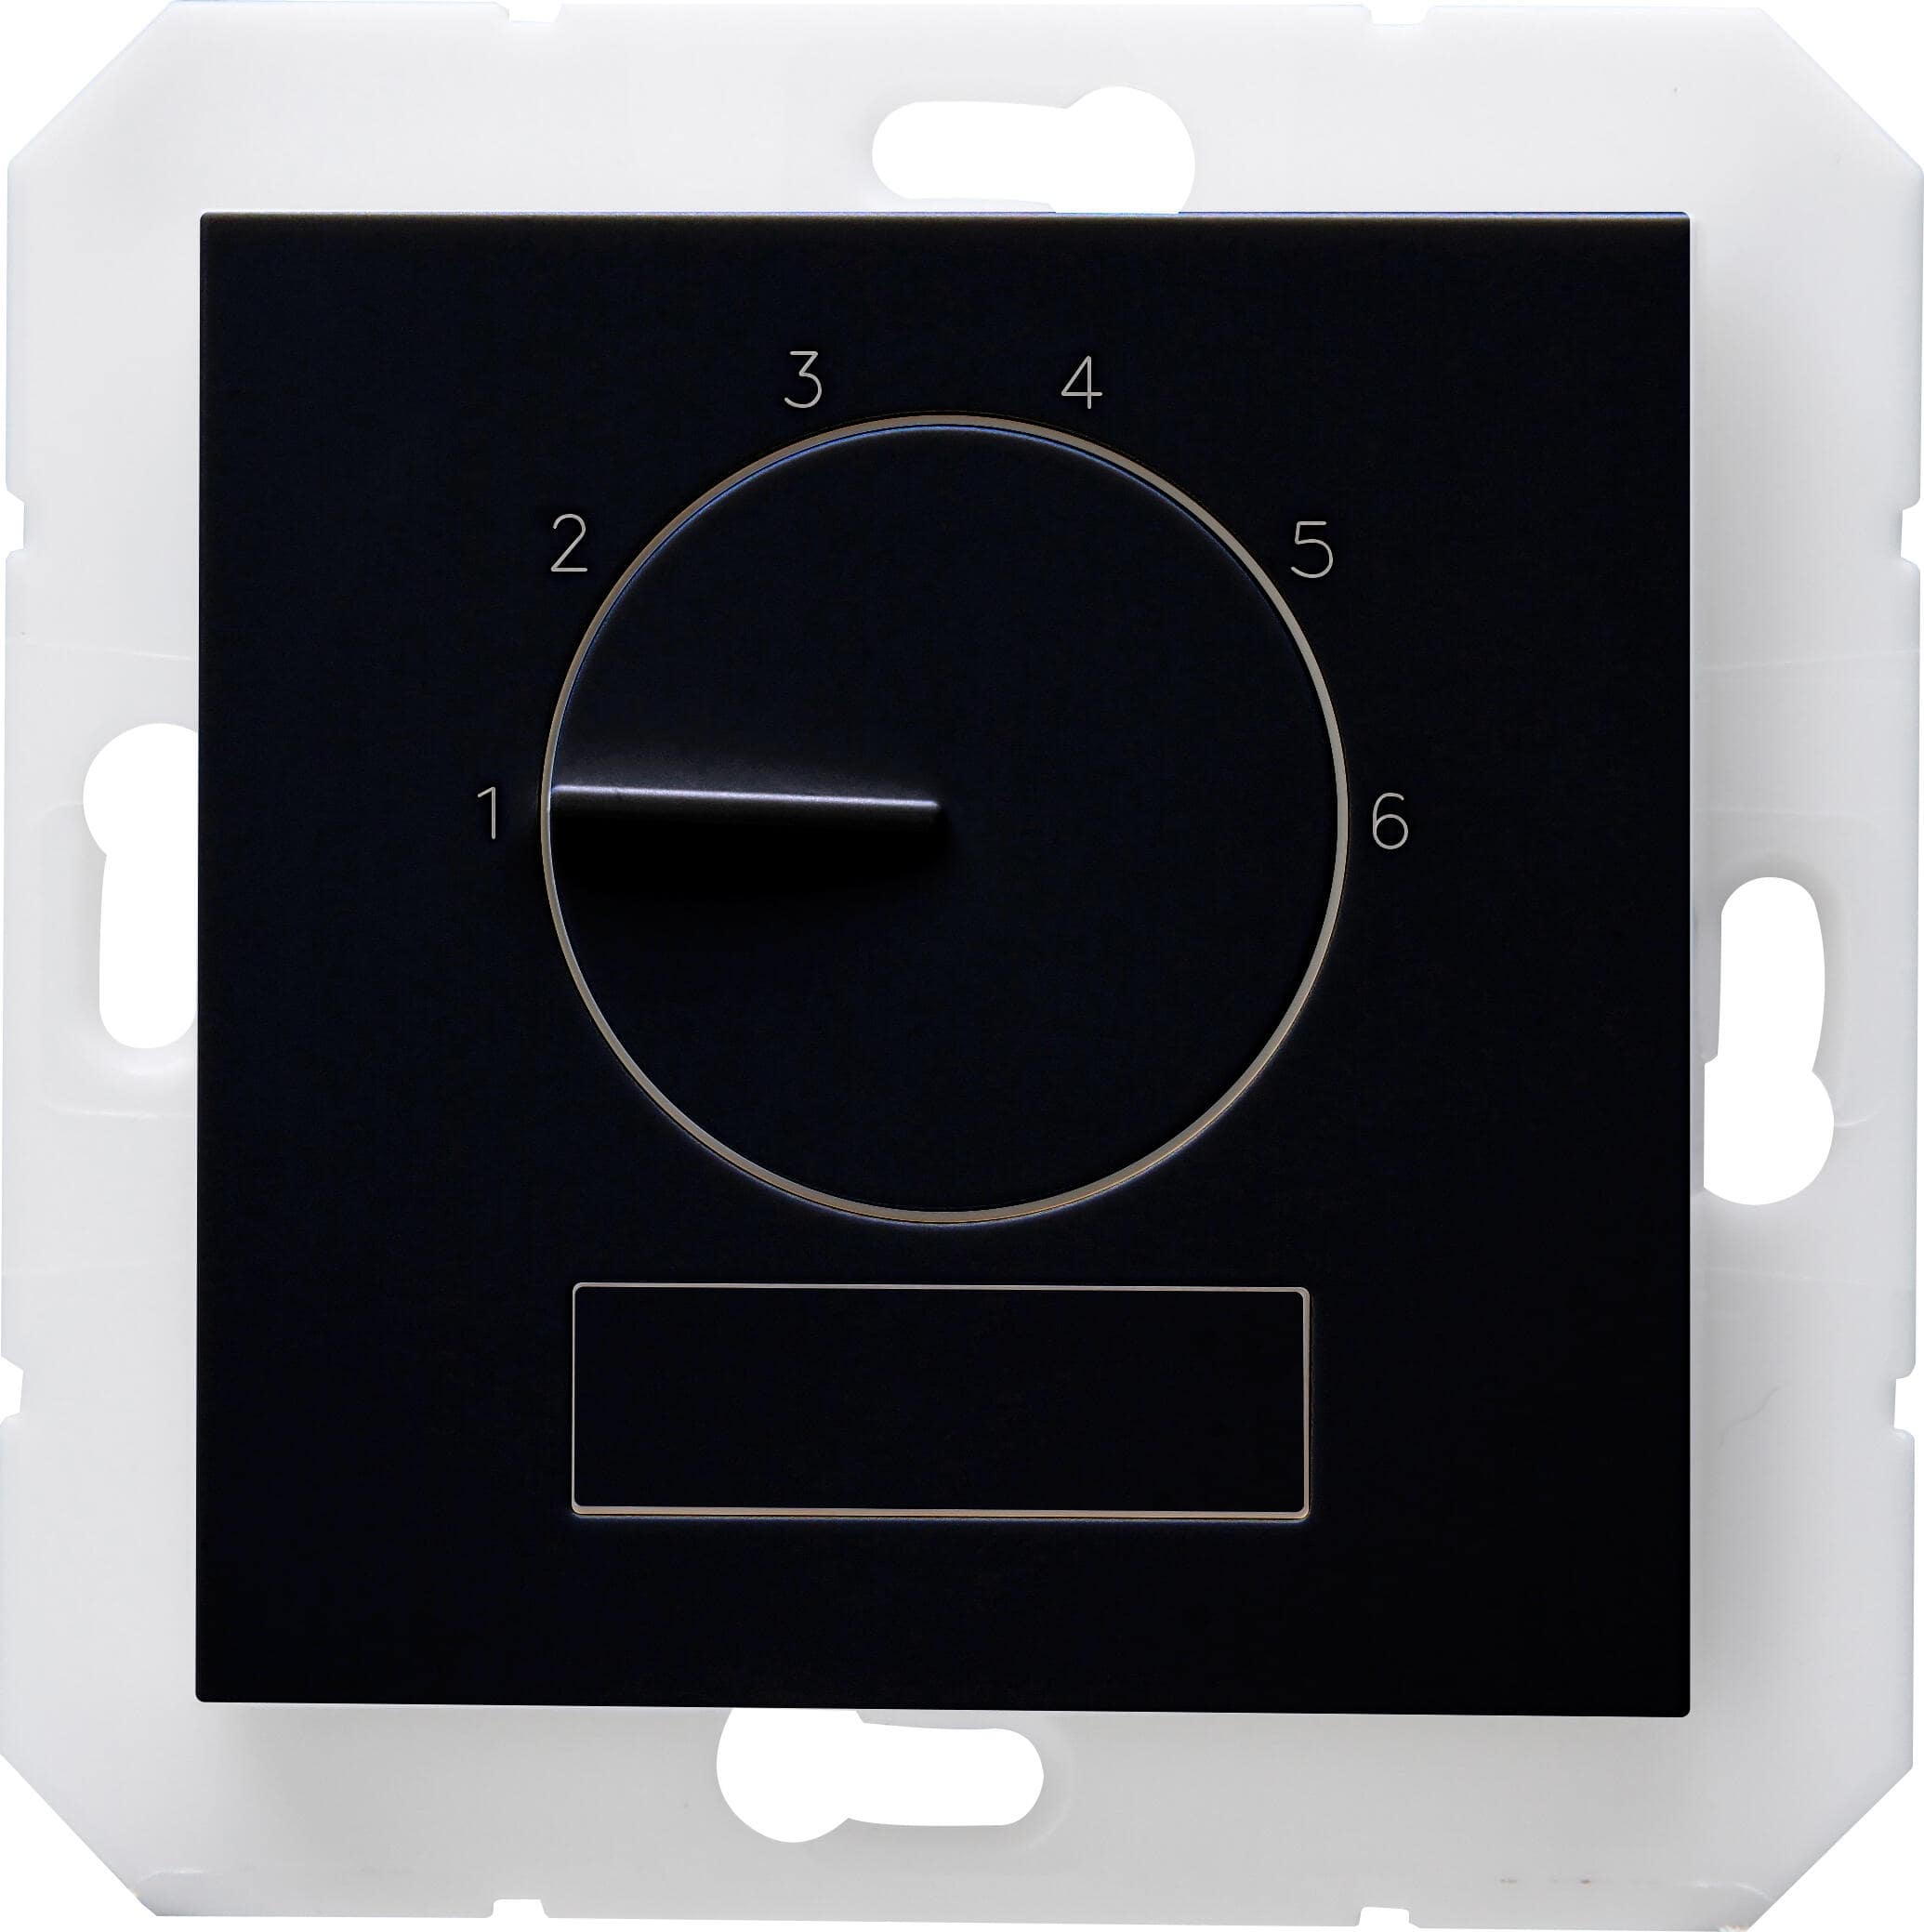 Kopp 296750001 HK07 - elektronisches Raumthermostat "Premium", Farbe: schwarz matt